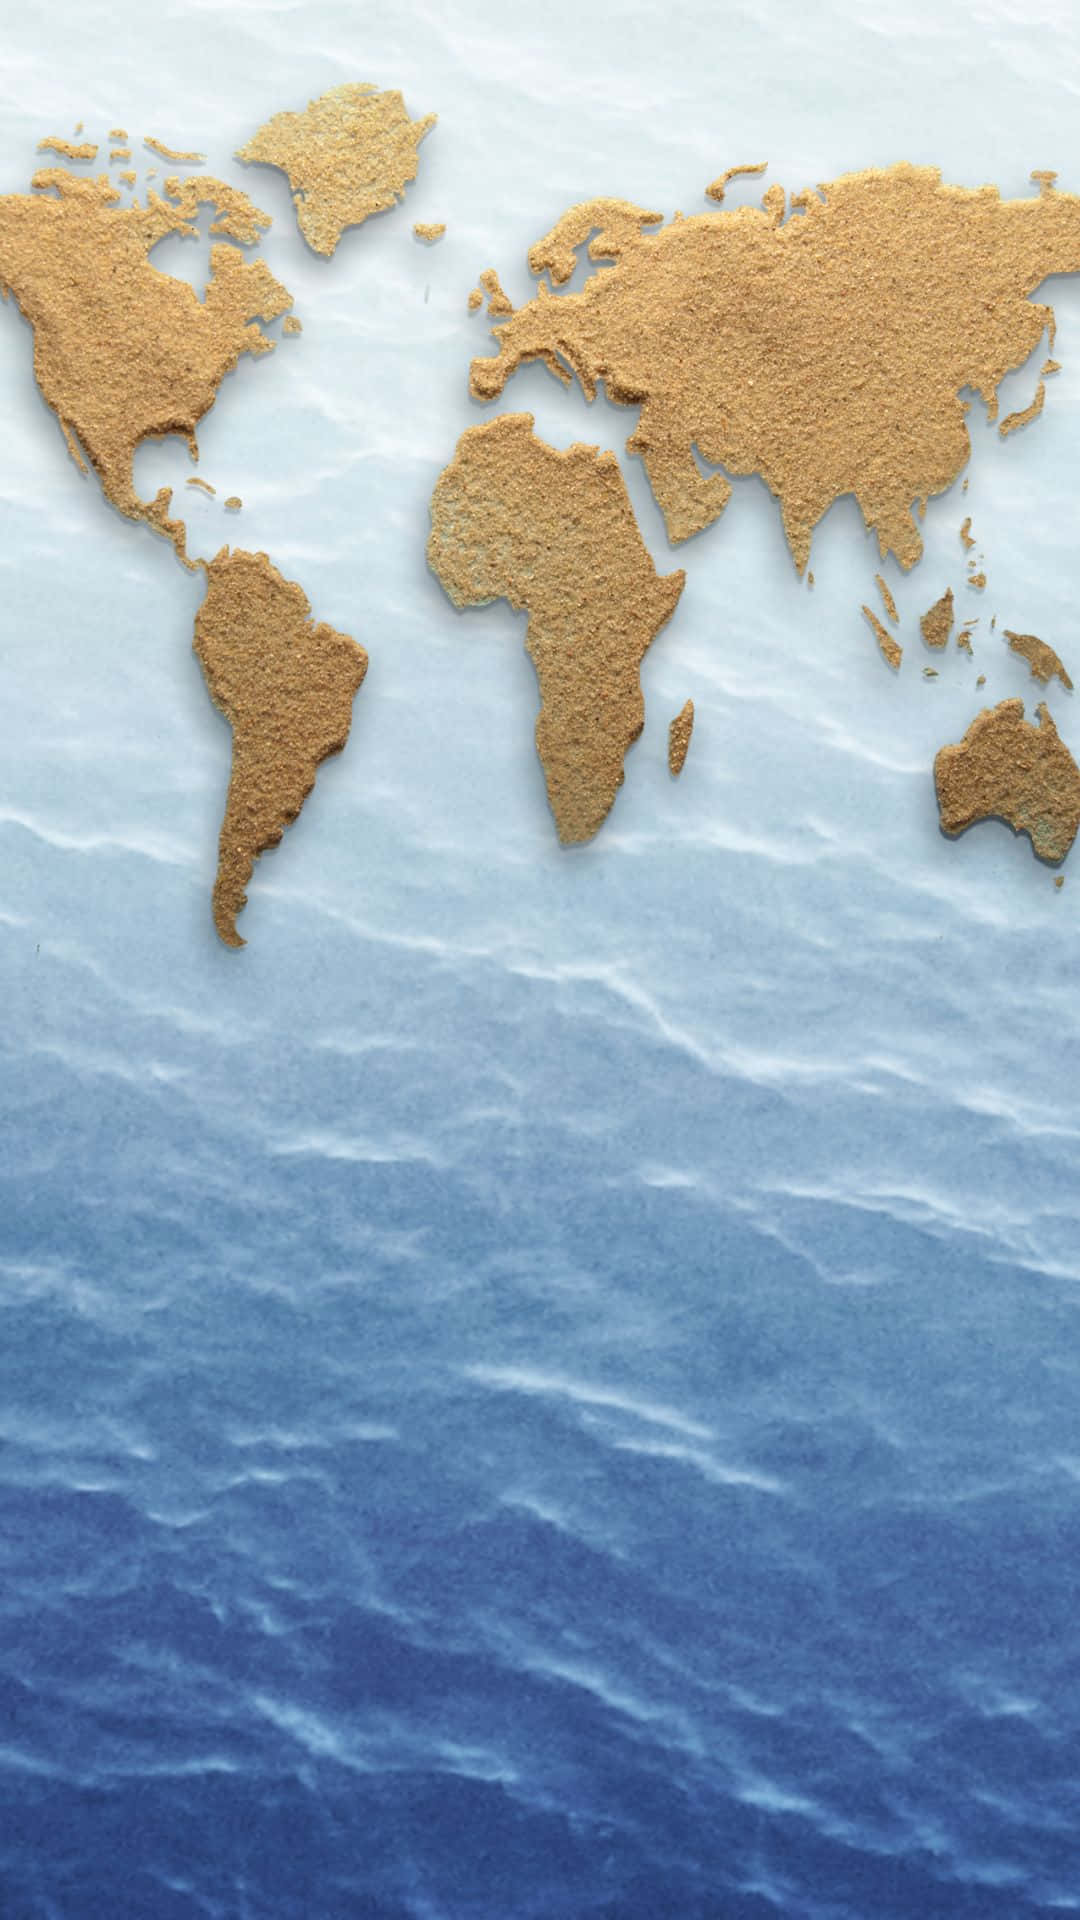 Attraktivbakgrundsbild Med En Världskarta Av Sand.